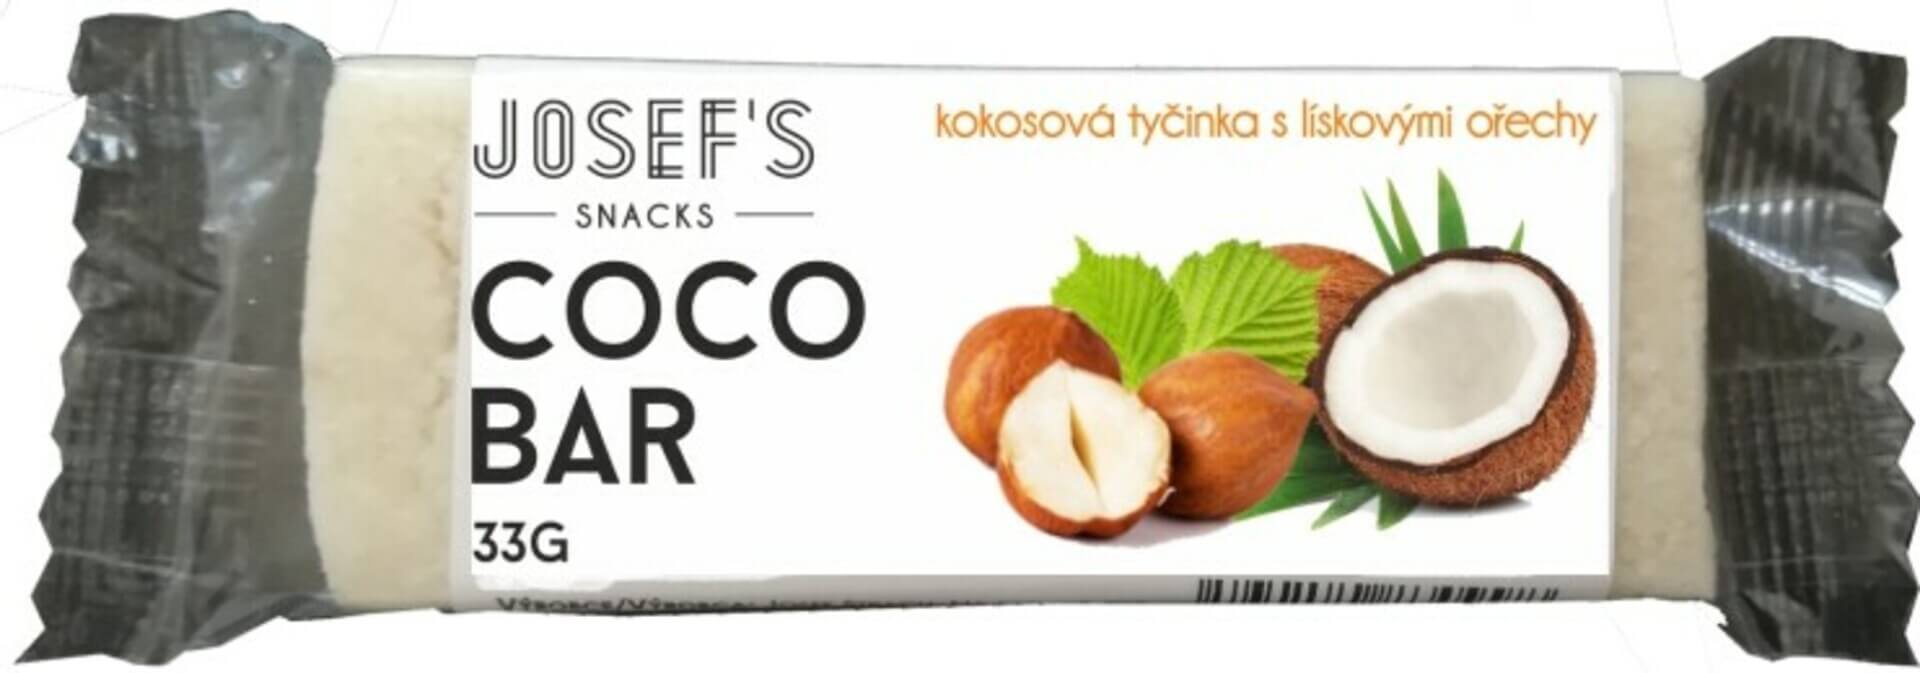 E-shop Josef 's snacks Kokosová tyčinka s lieskovým orechom 33 g